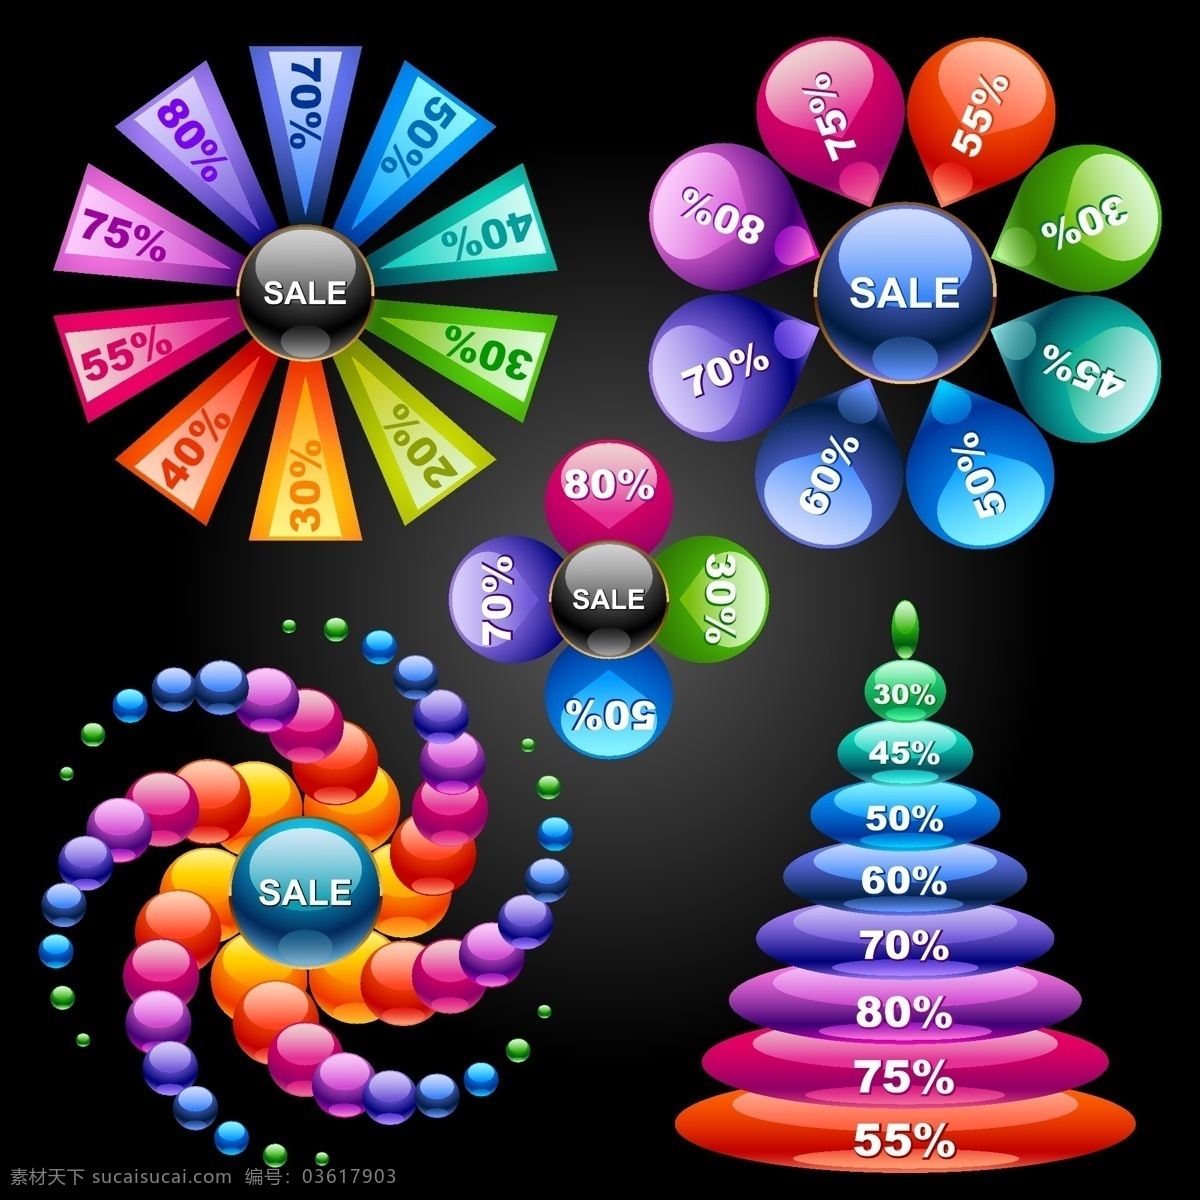 环形 彩色 销售 统计 图 多彩 矢量素材 统计图 绚丽 矢量图 其他矢量图